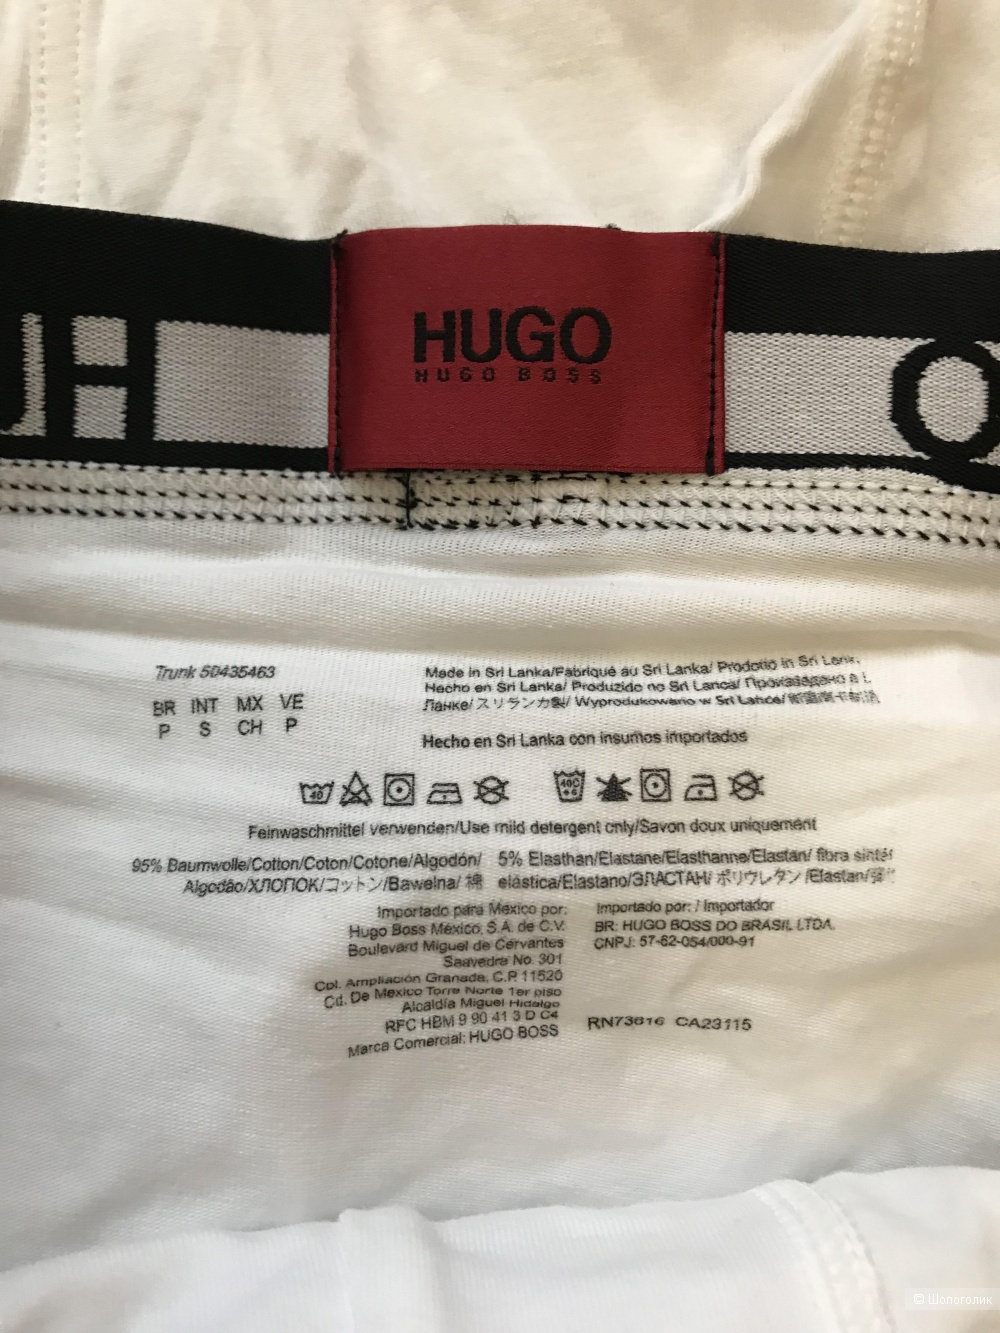 Hugo комплект трусов